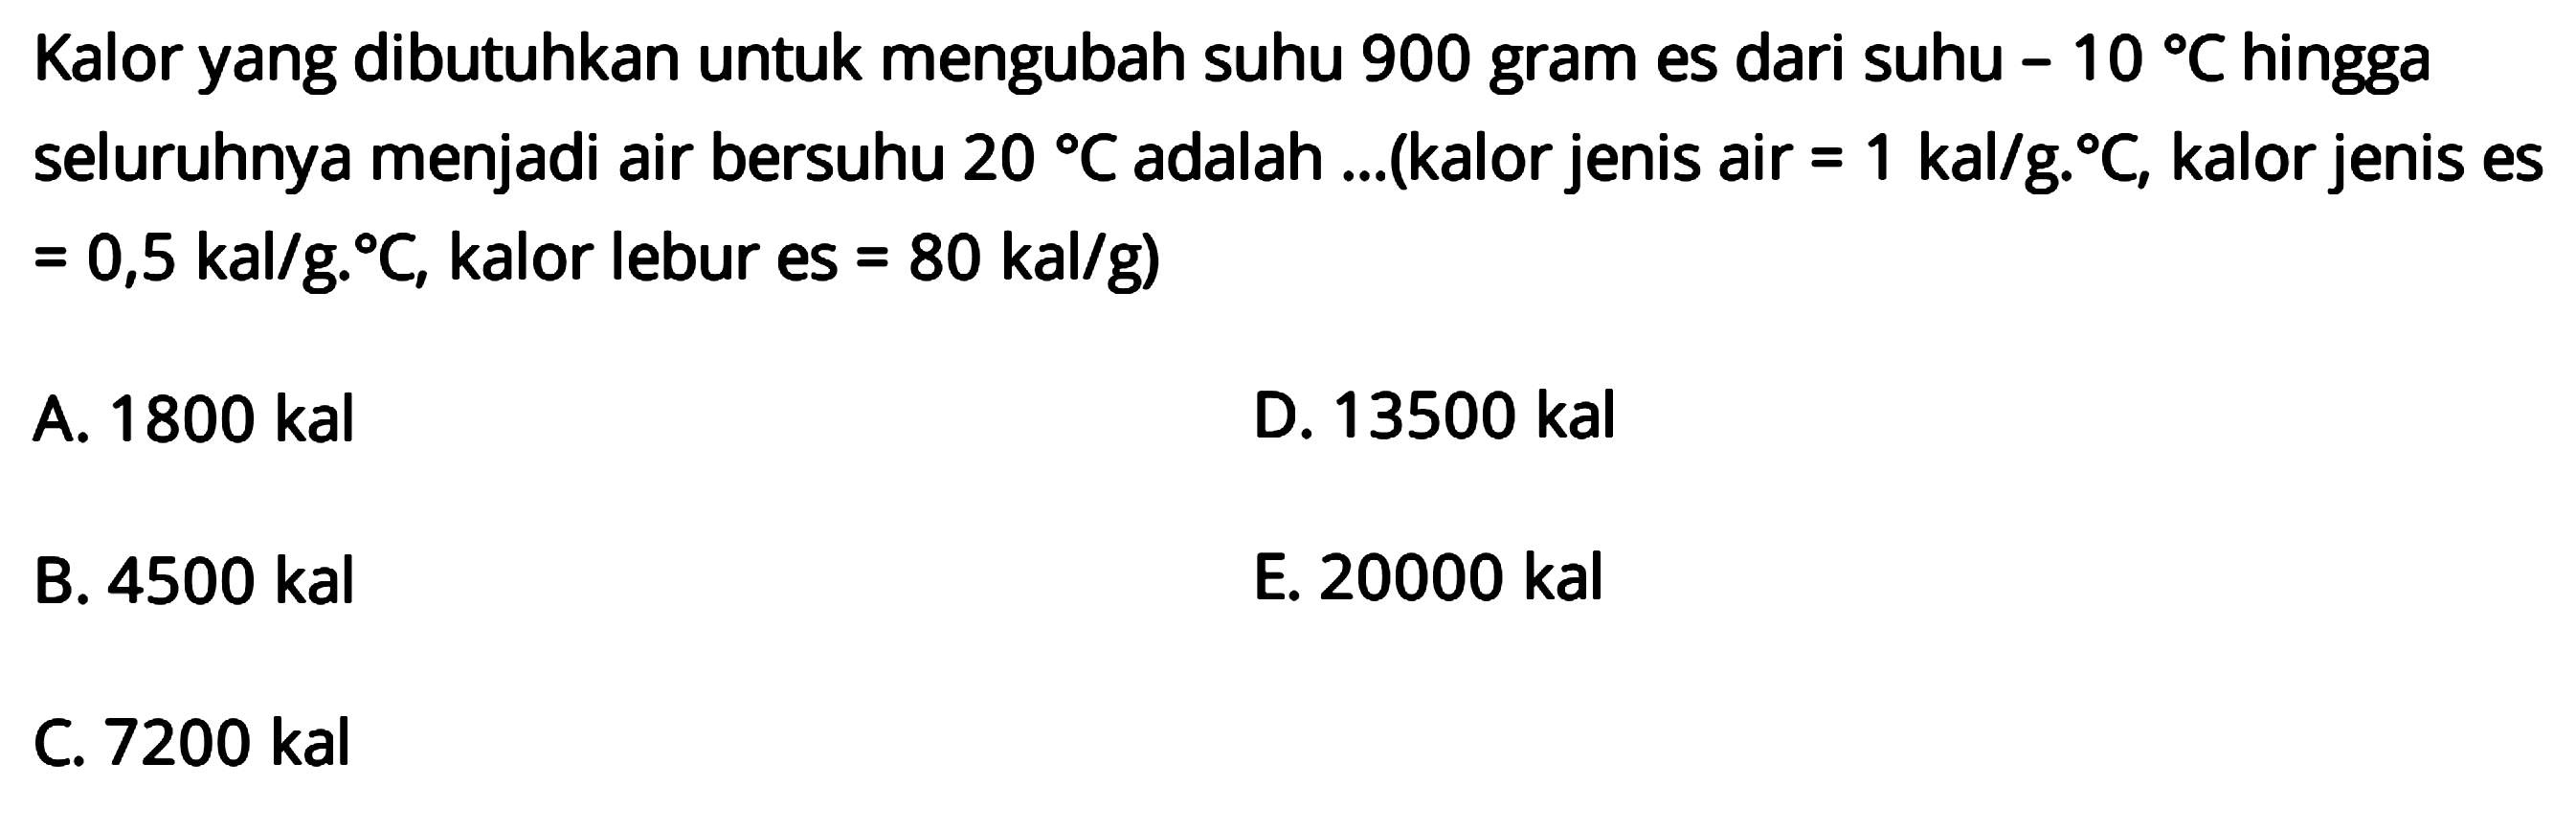 Kalor yang dibutuhkan untuk mengubah suhu 900 gram es dari suhu -10 C hingga seluruhnya menjadi air bersuhu 20 C adalah ... (kalor jenis air=1 kal/gC, kalor jenis es=0,5 kal/gC, kalor lebur es=80 kal/g)